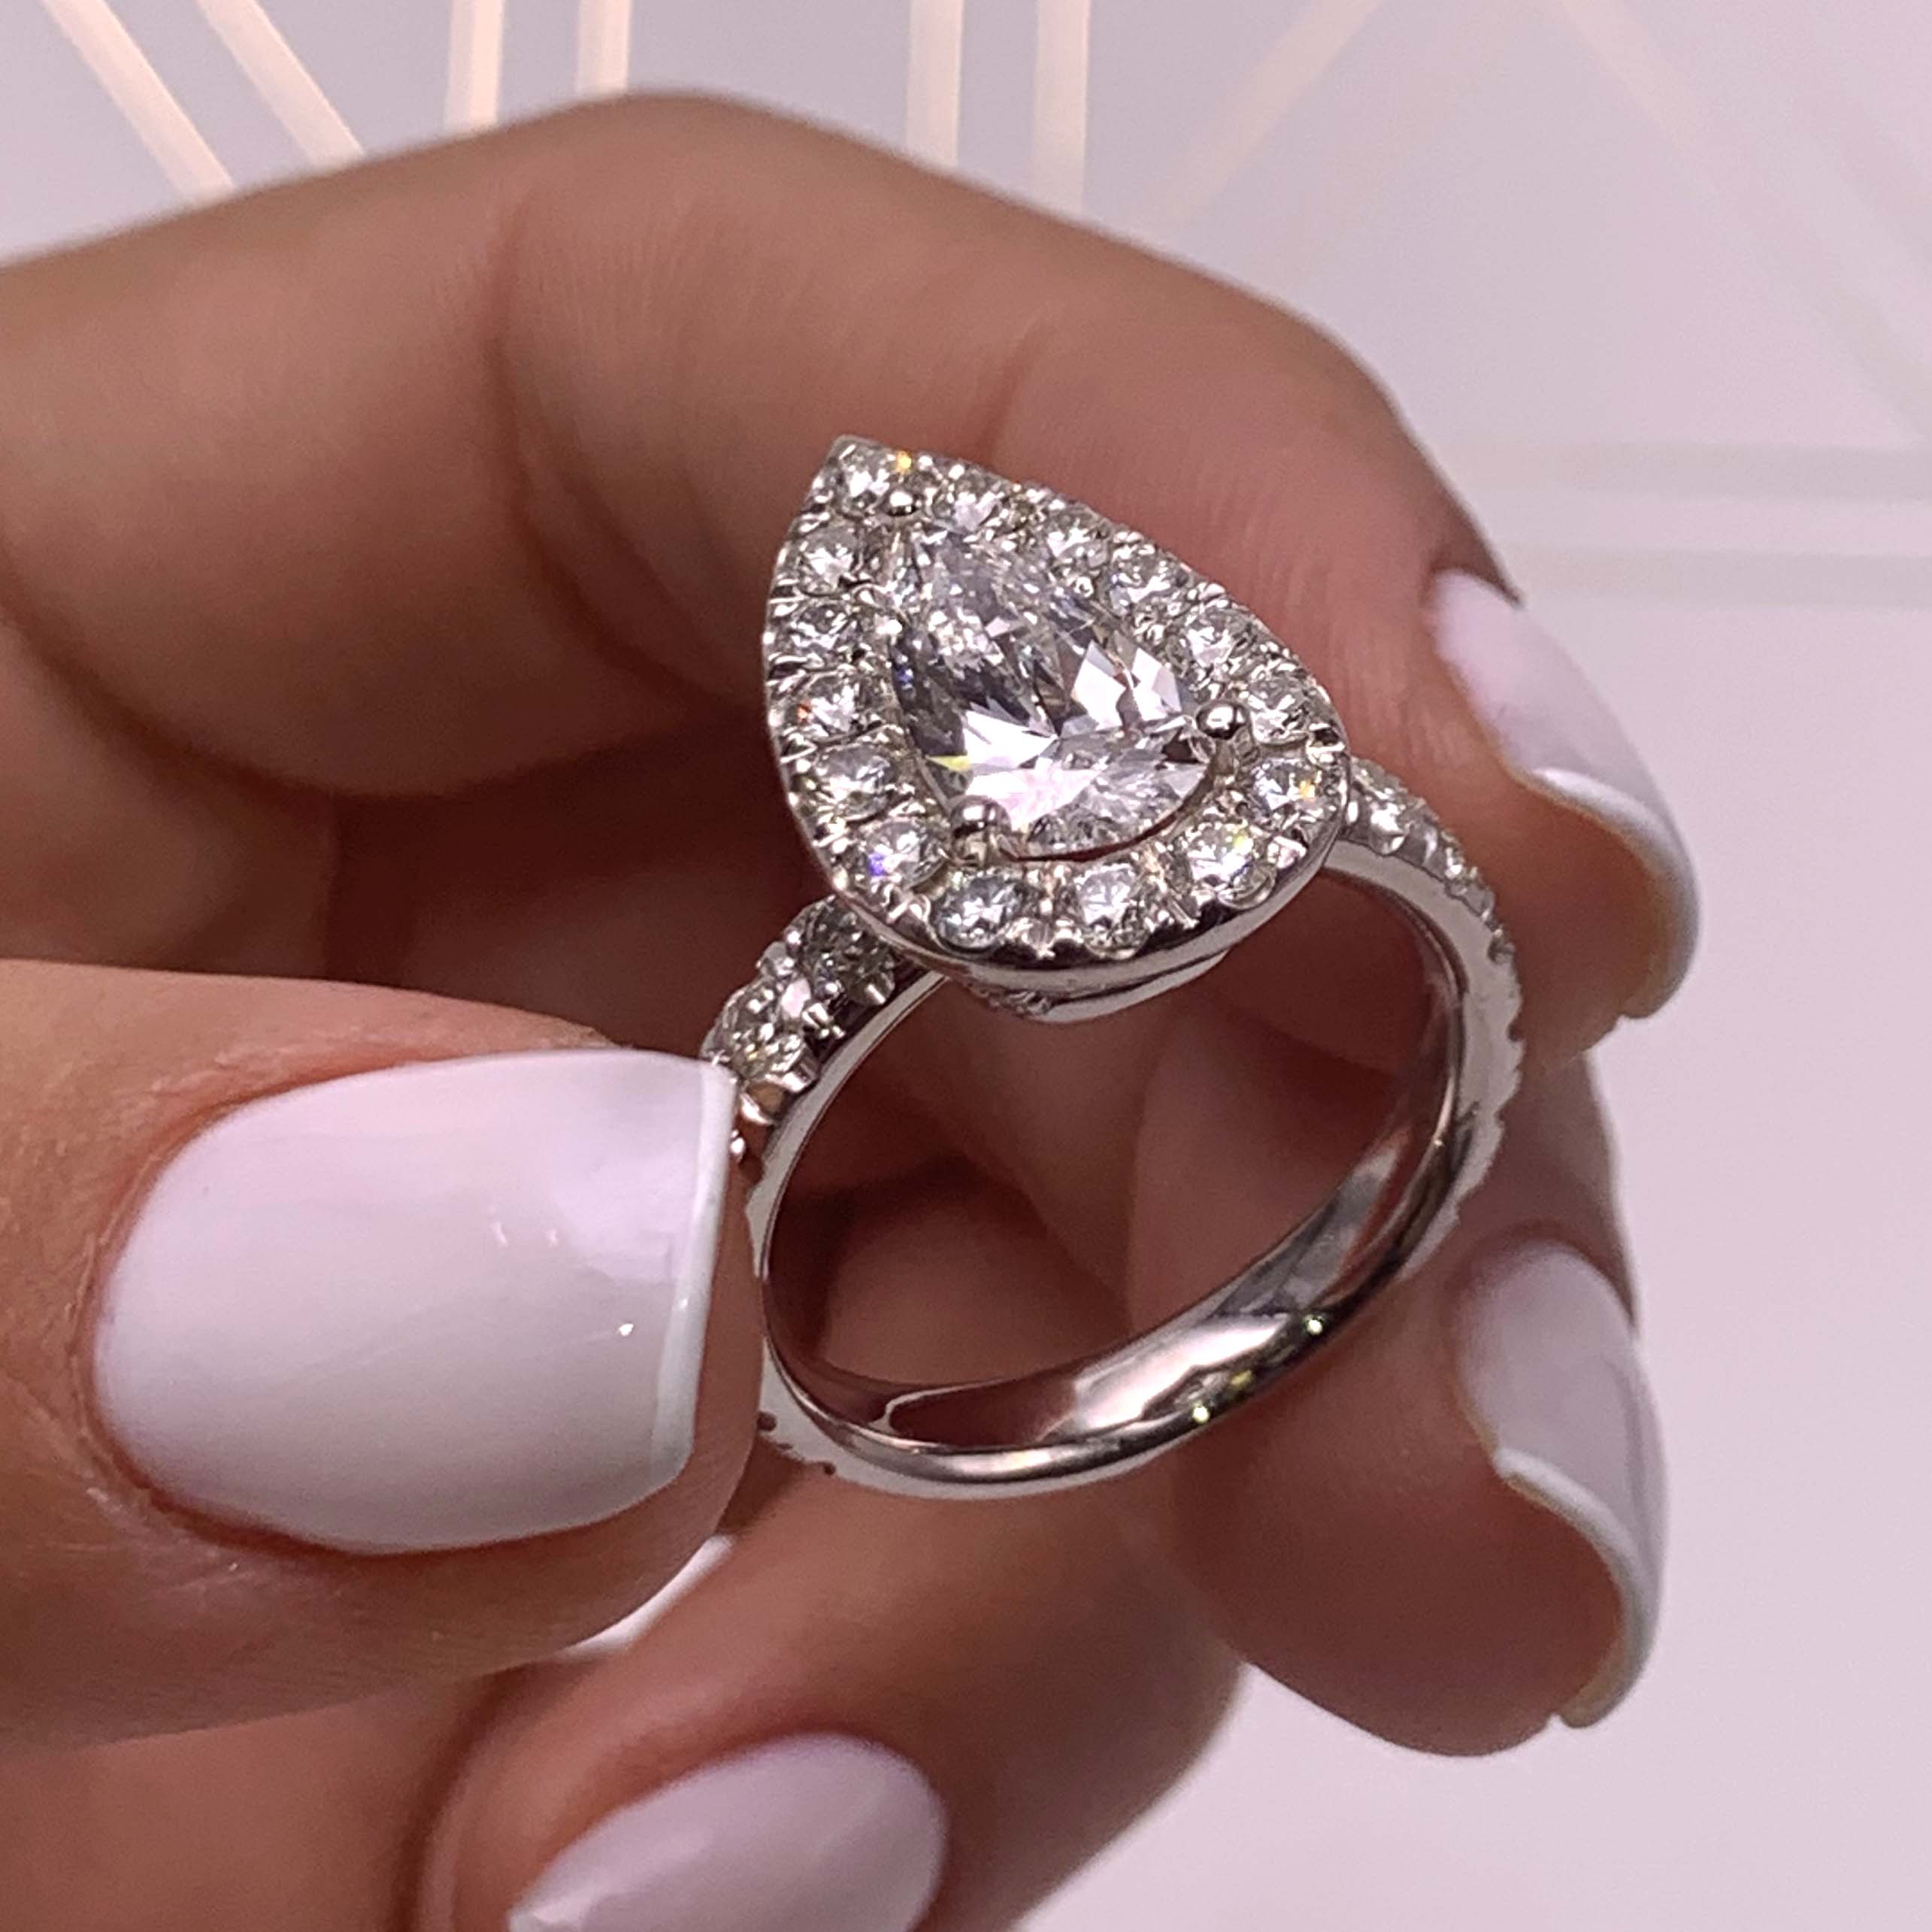 Maya Diamond Engagement Ring   (4 Carat) -14K White Gold (RTS)